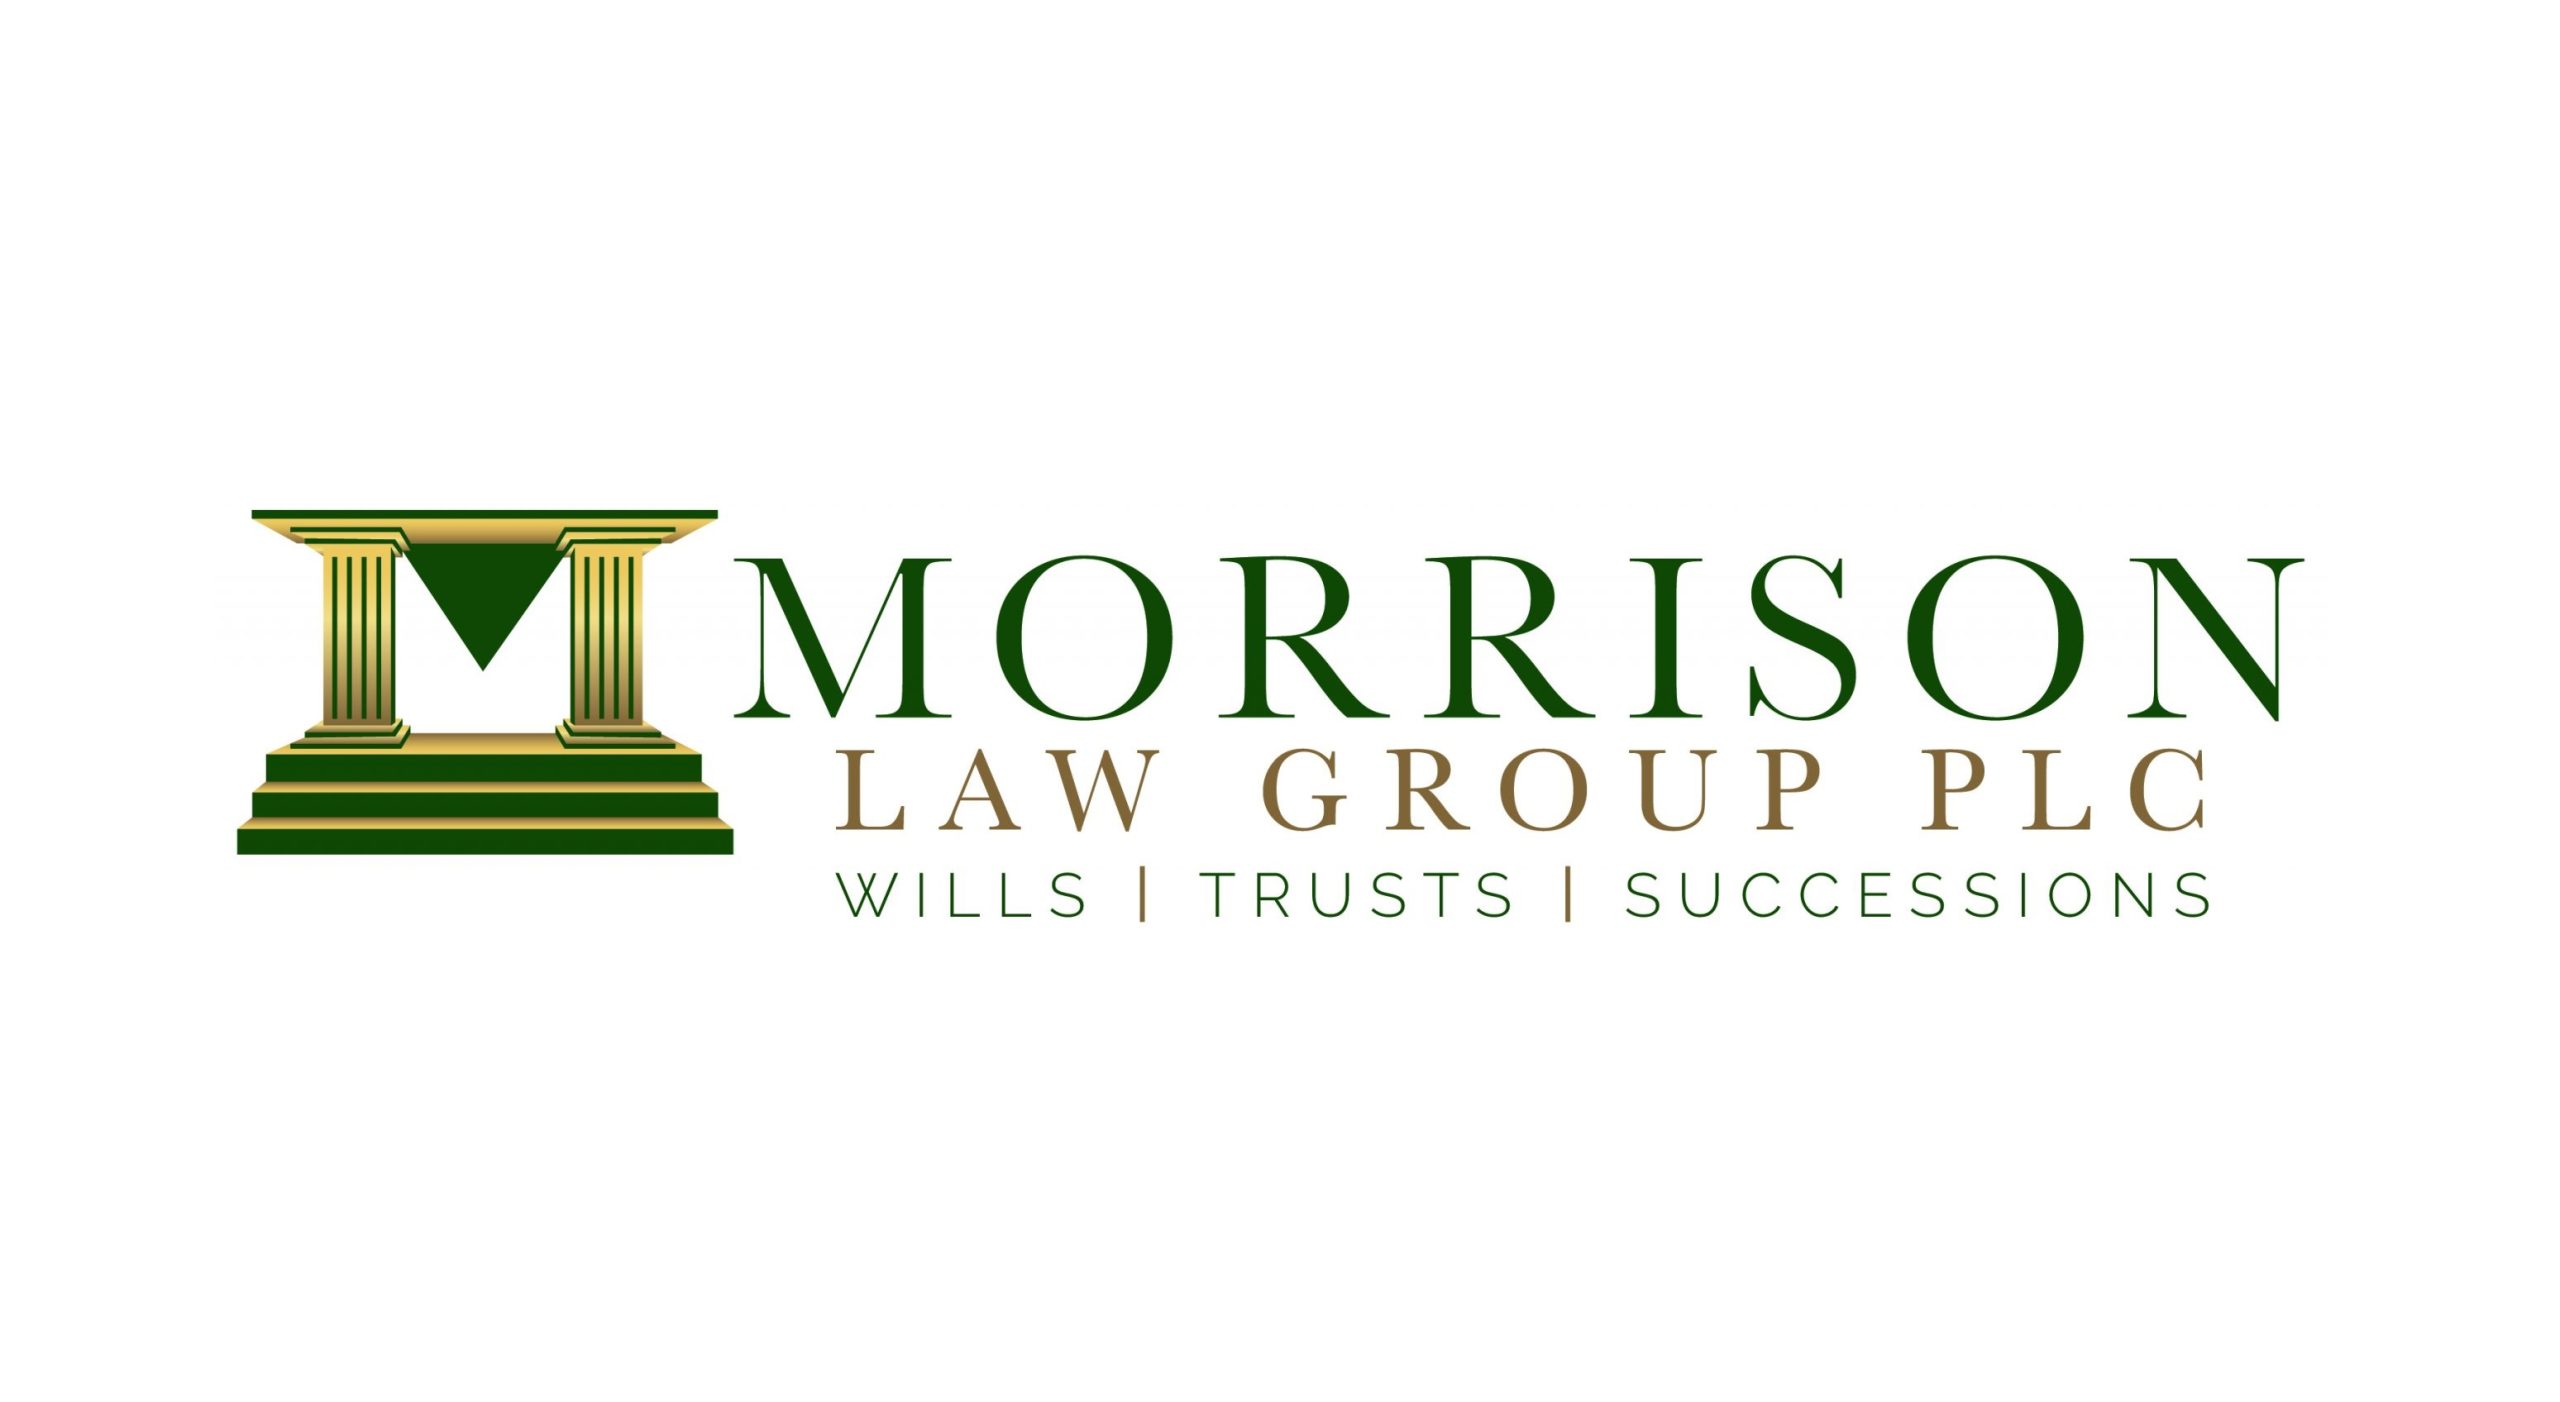 Morrison Law Group PLC